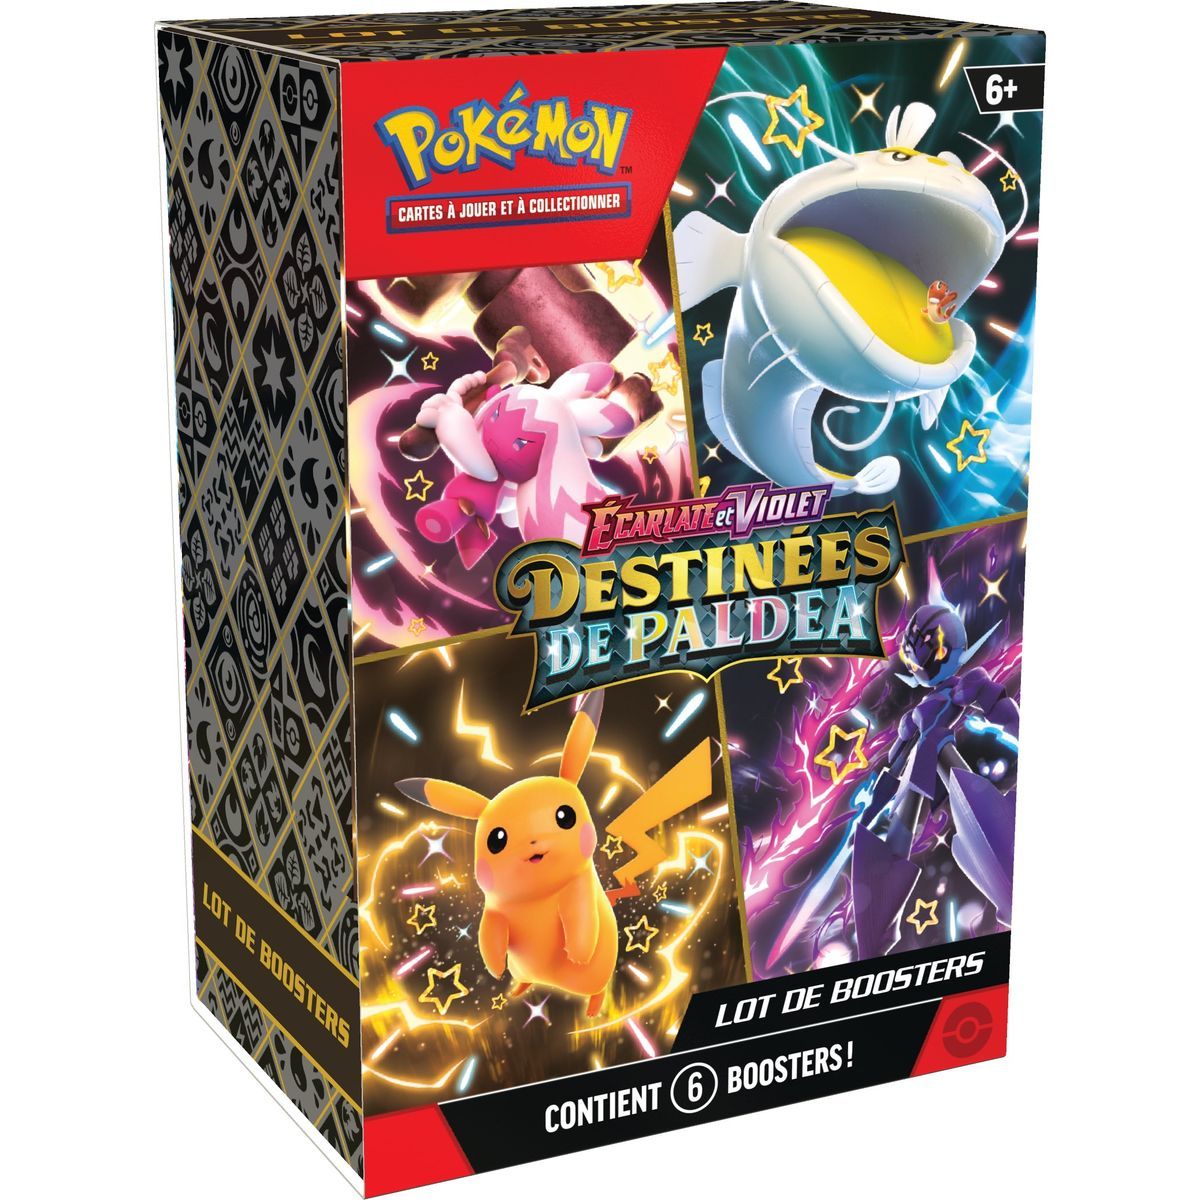 Pokémon - Coffret Bundle 6 Boosters - Ecarlate et Violet - Destinées de Paldea -[SV04.5 - EV04.5] - FR